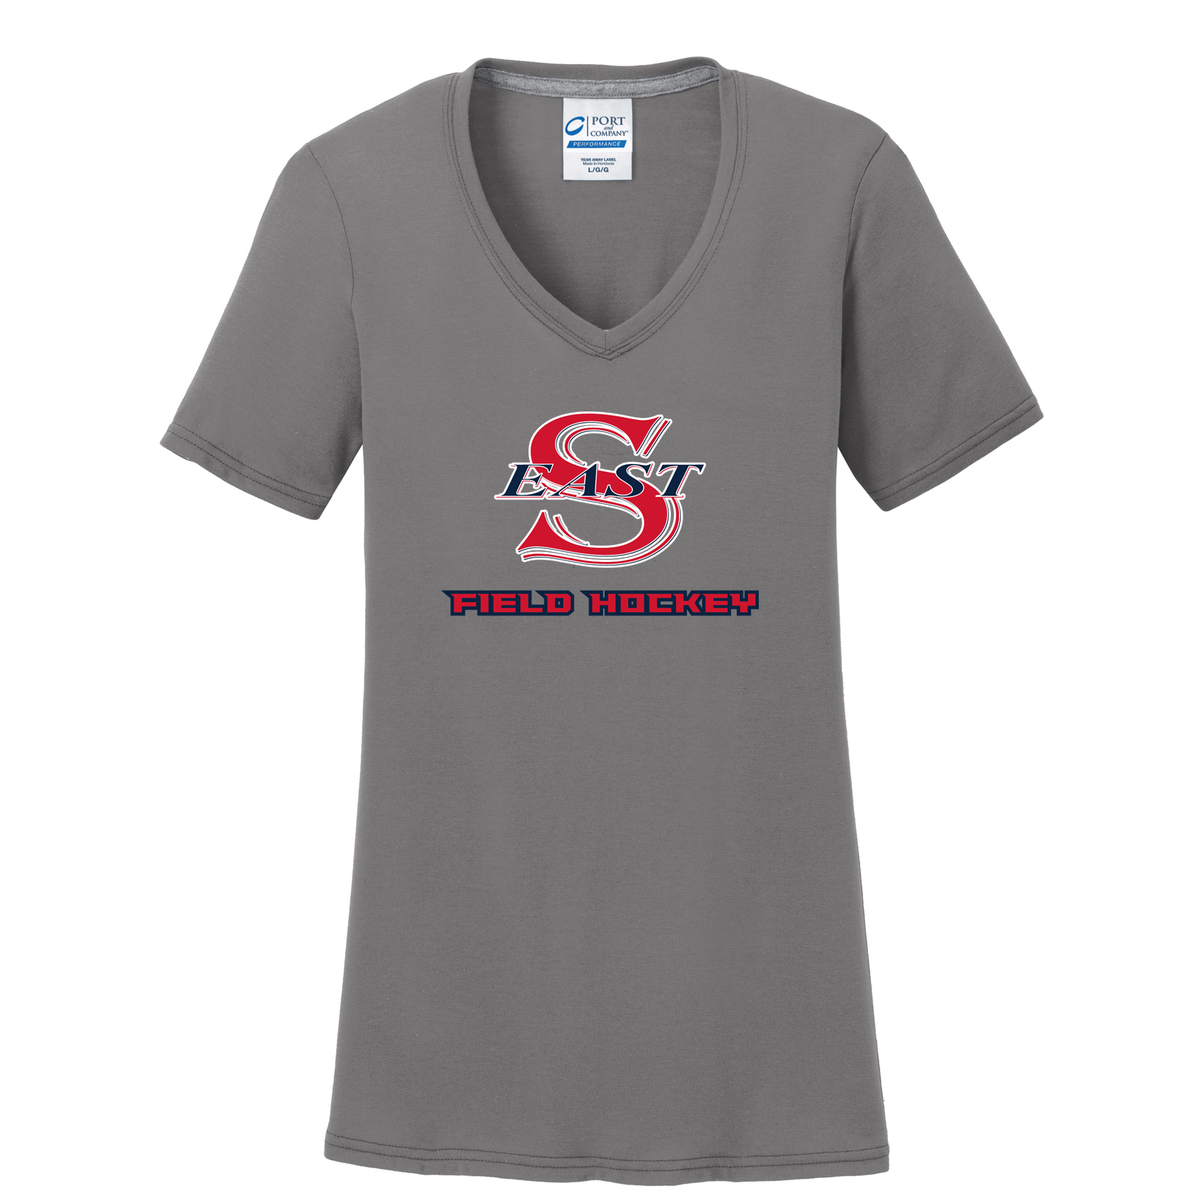 Smithtown East Field Hockey Women's T-Shirt